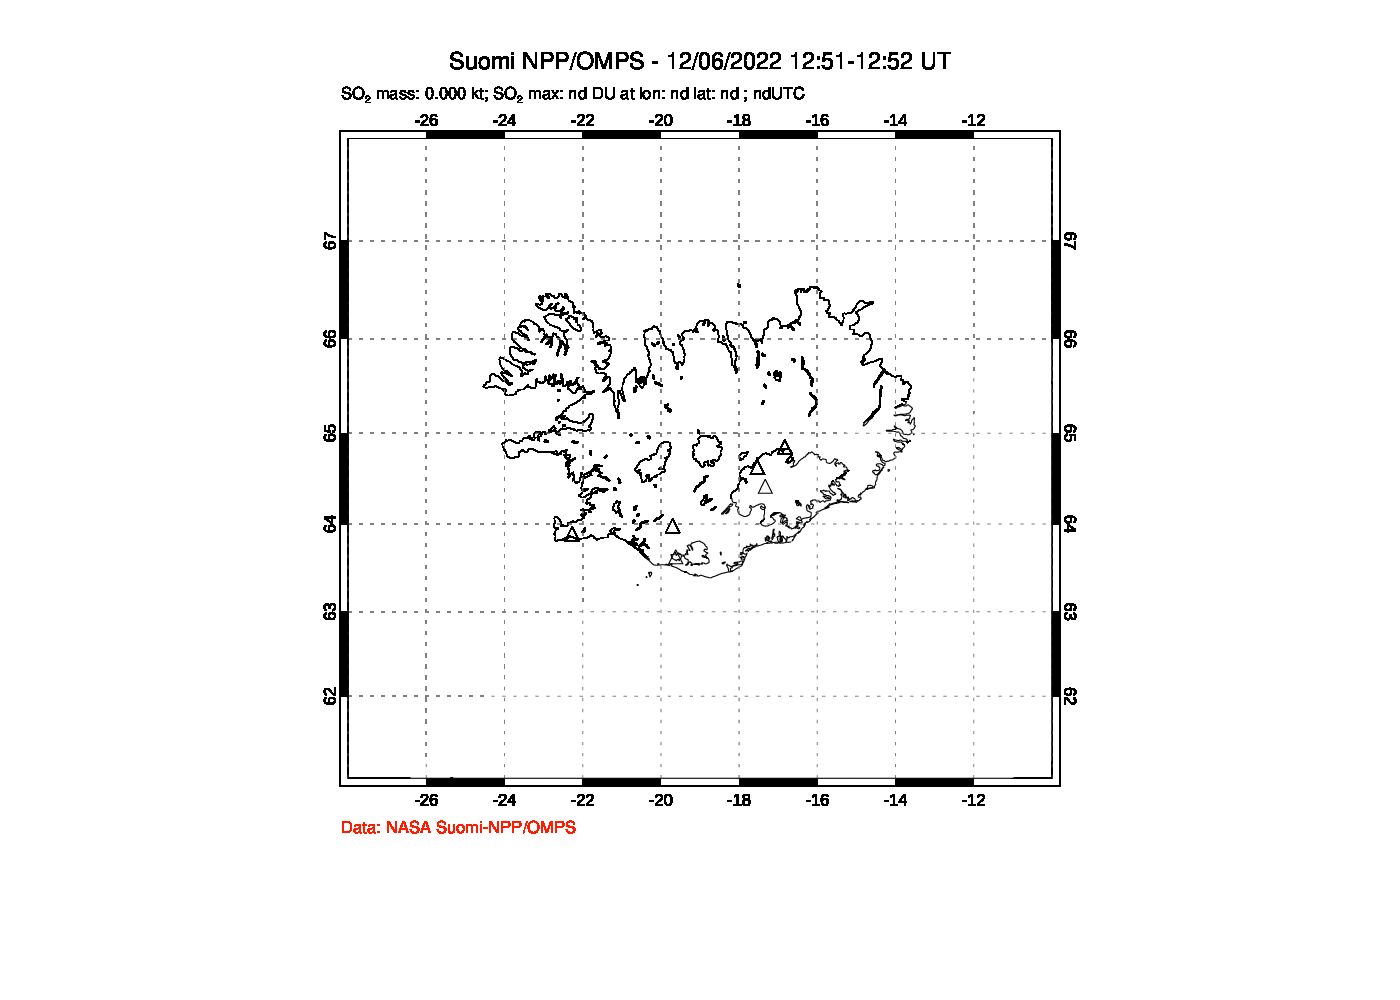 A sulfur dioxide image over Iceland on Dec 06, 2022.